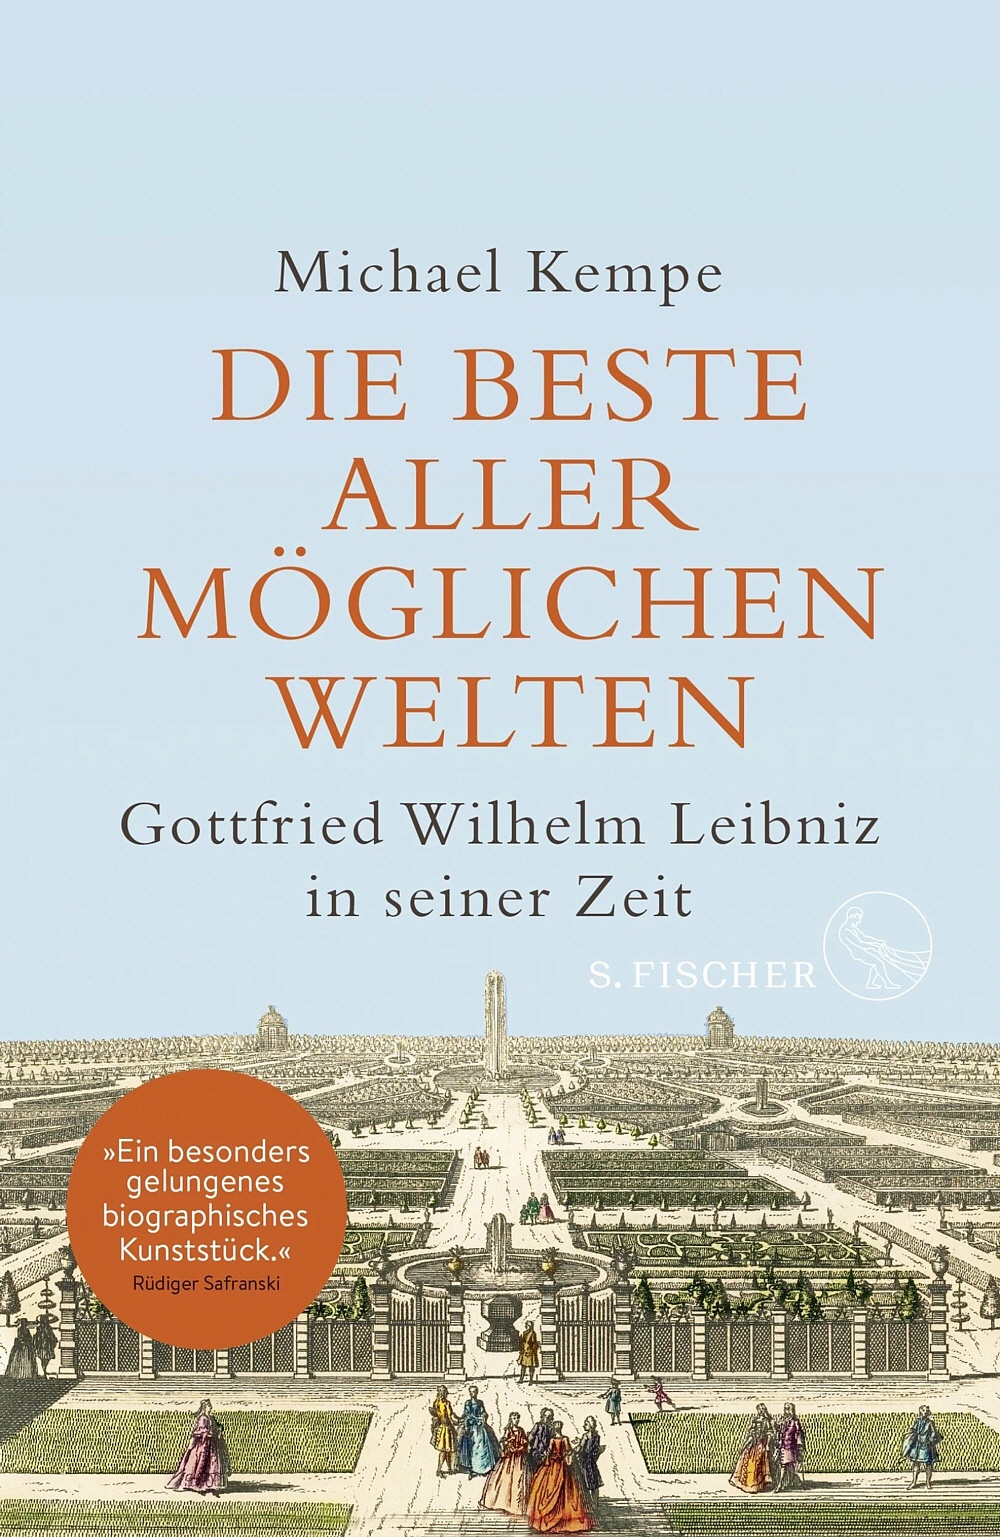 (Buchcover: S. Fischer-Verlag)